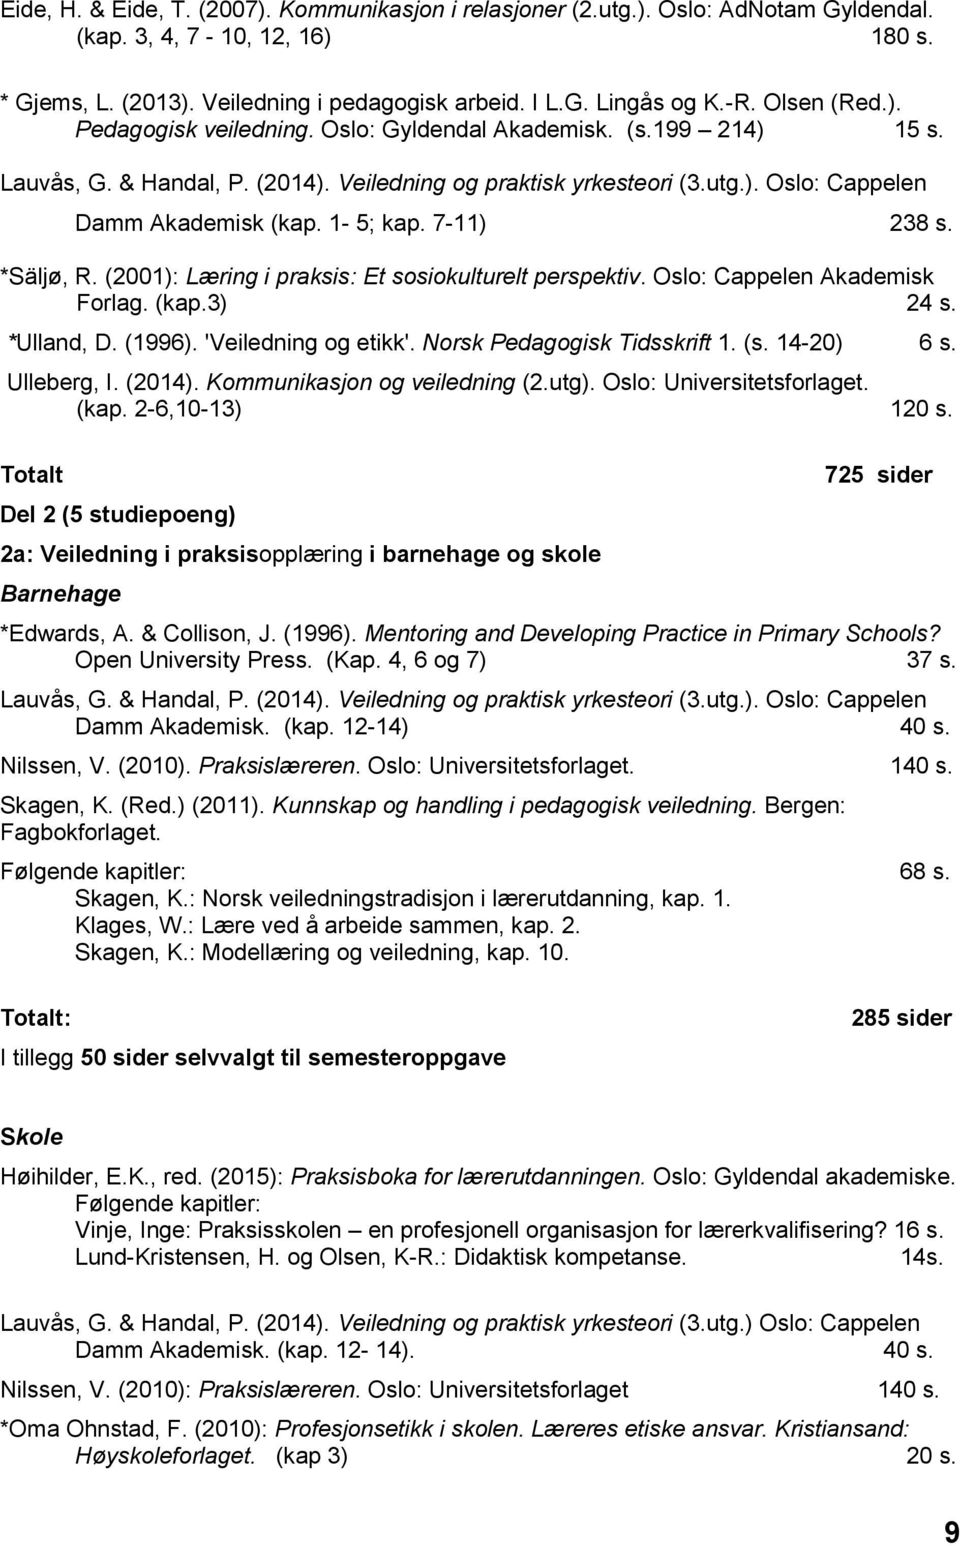 1-5; kap. 7-11) 238 s. *Säljø, R. (2001): Læring i praksis: Et sosiokulturelt perspektiv. Oslo: Cappelen Akademisk Forlag. (kap.3) 24 s. *Ulland, D. (1996). 'Veiledning og etikk'.